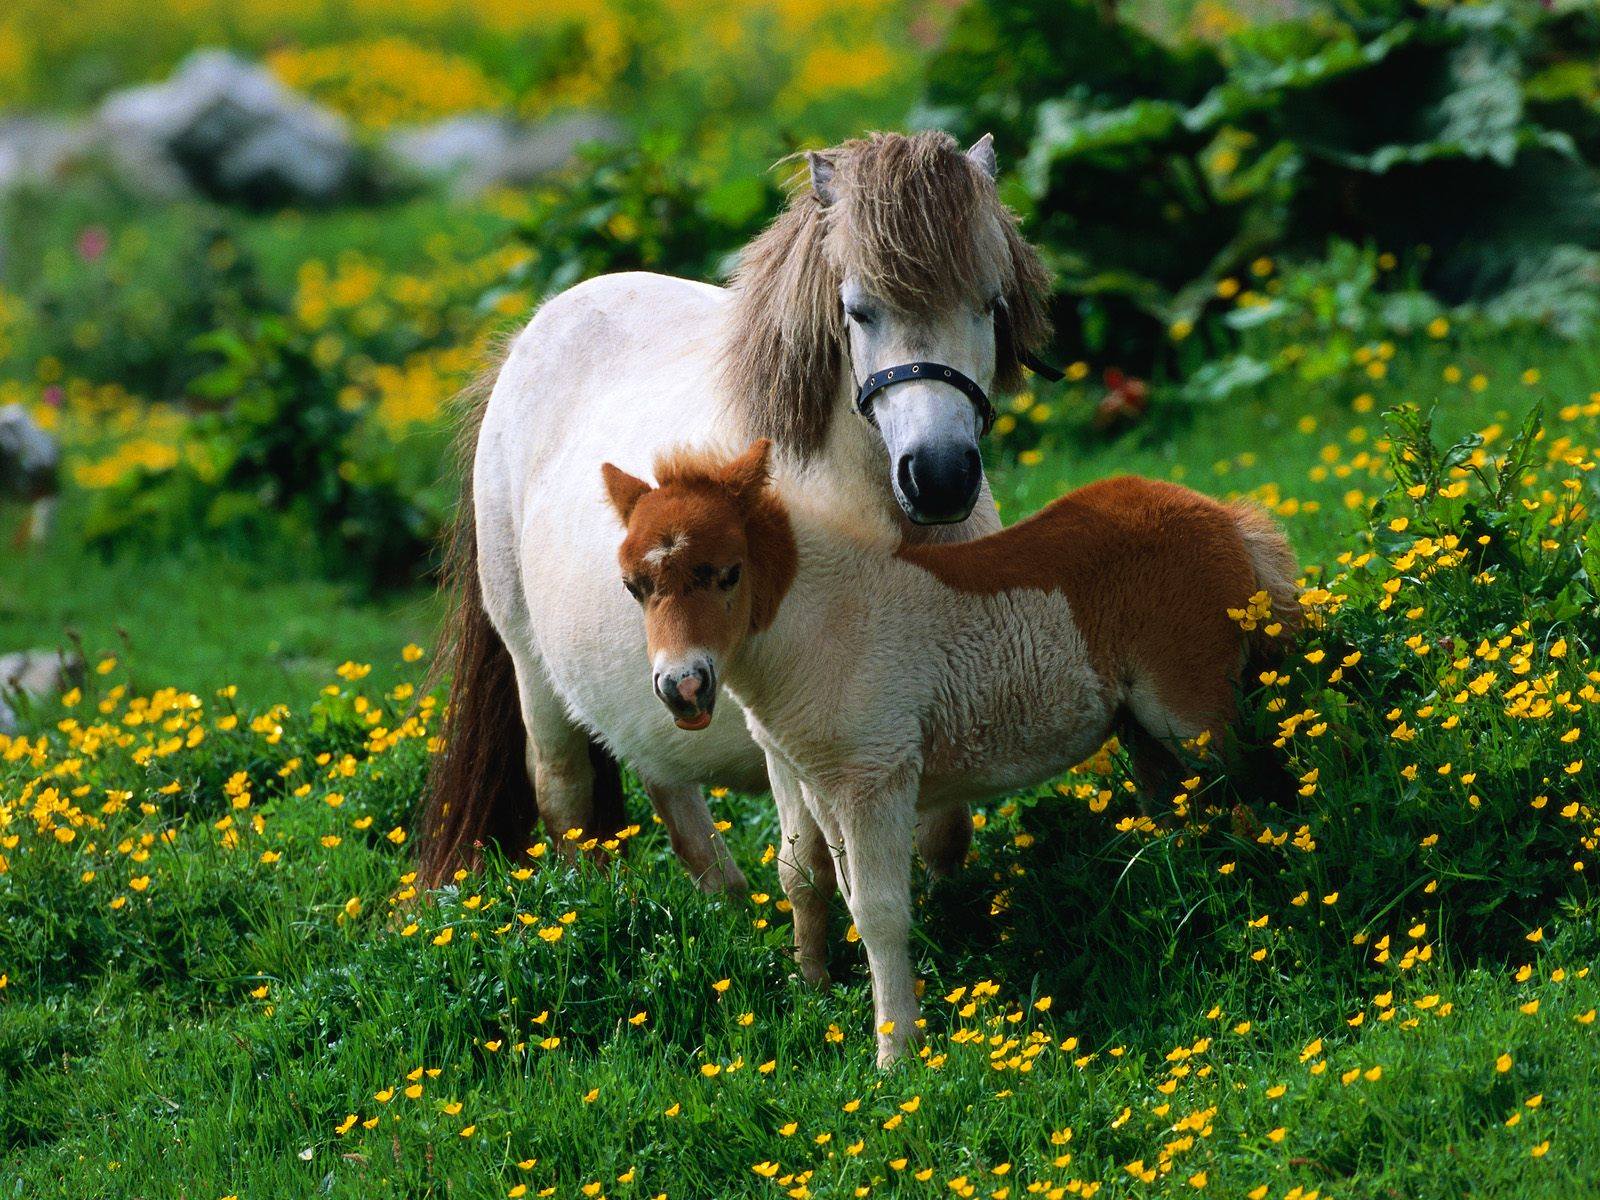 Shetland Pony and Foal